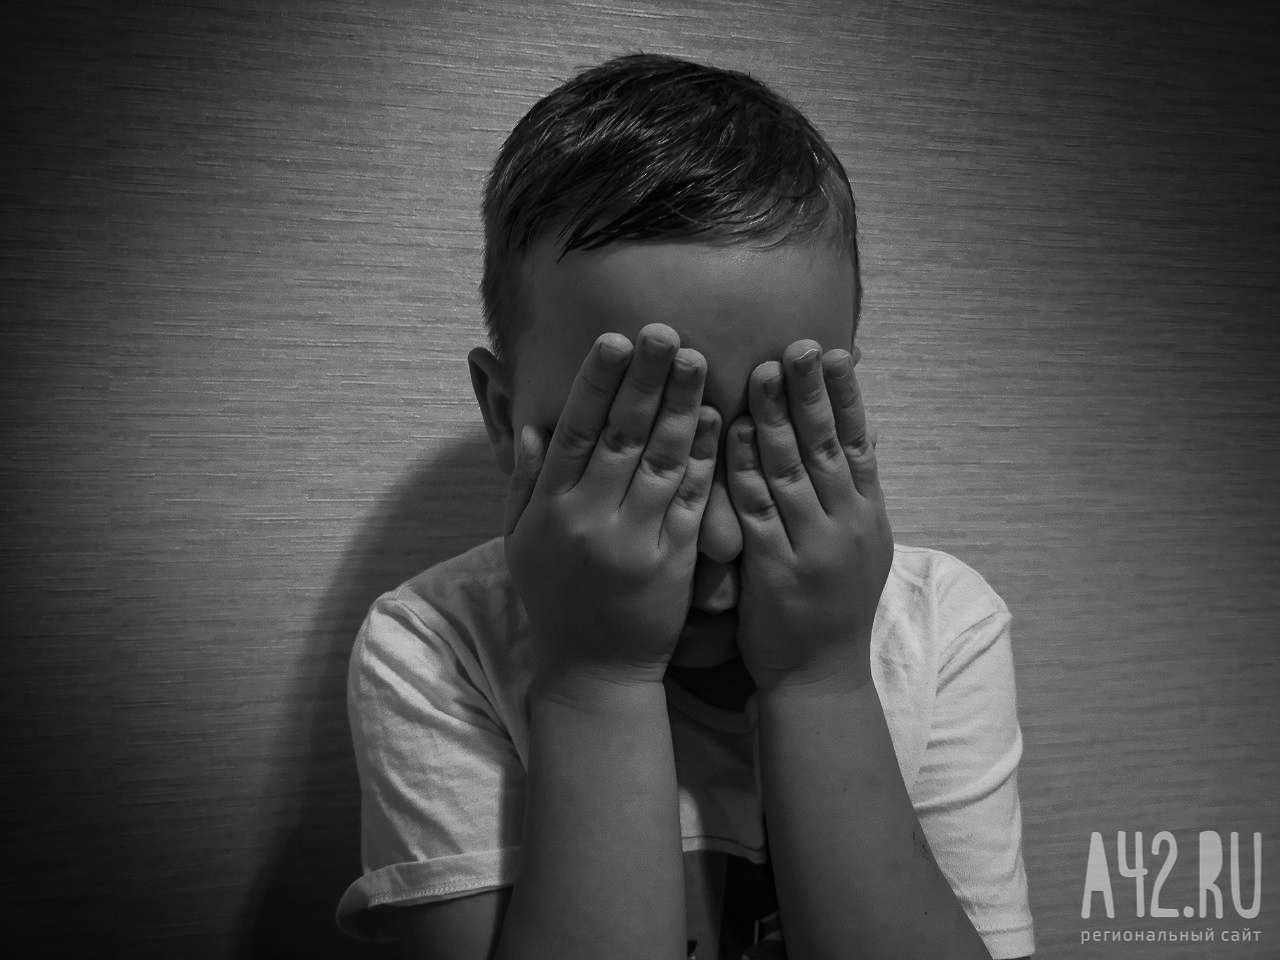 Жителю Кузбасса дали условный срок за регулярные избиения ребёнка сожительницы